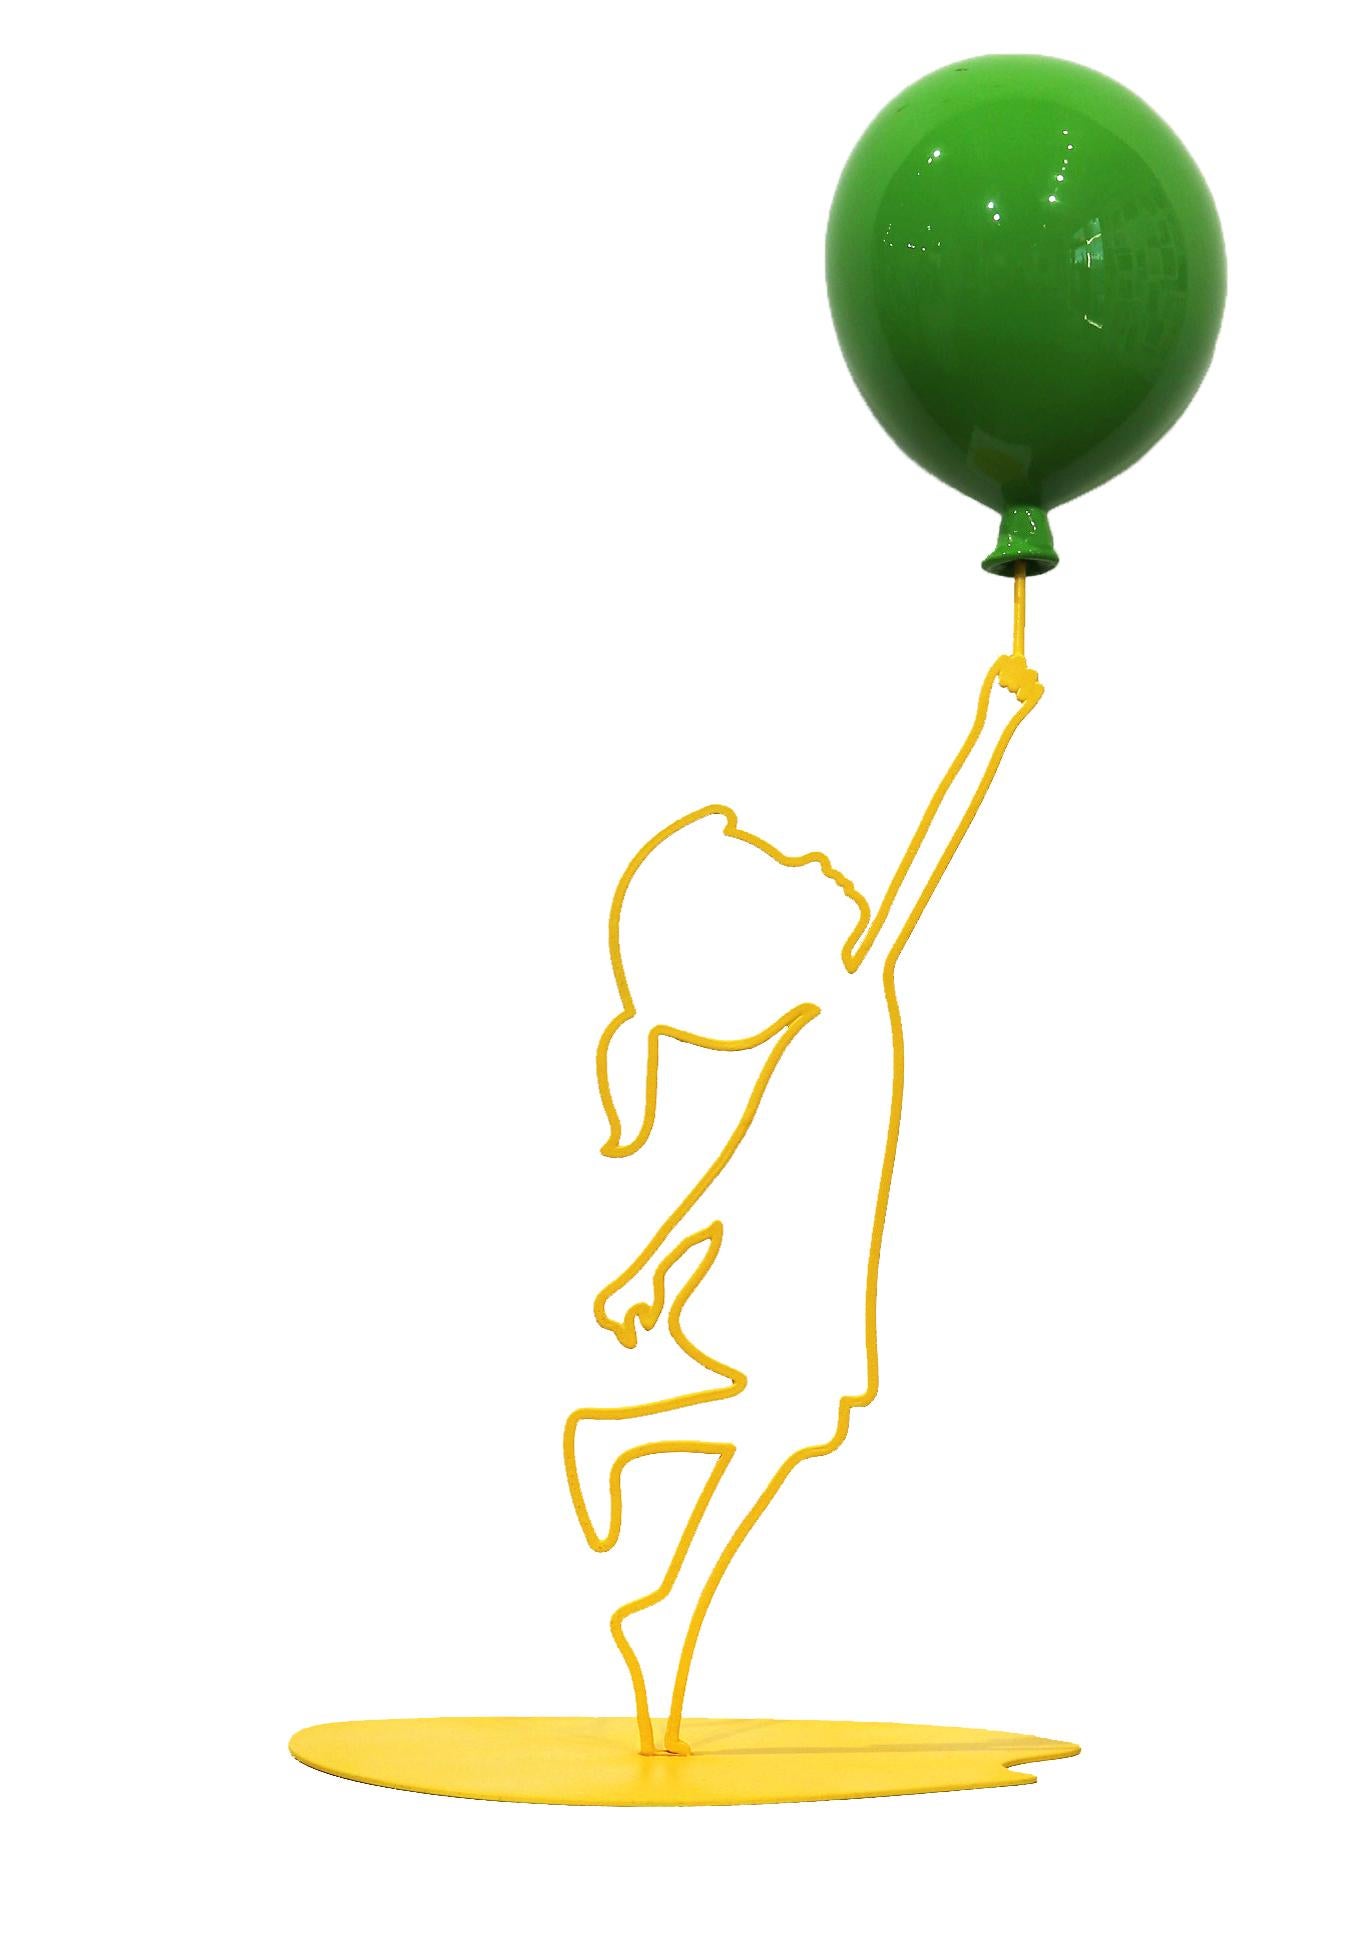 Hoffnungsvolle (19/35) - Gelbe figurative Skulptur mit glänzendem grünem Ballon